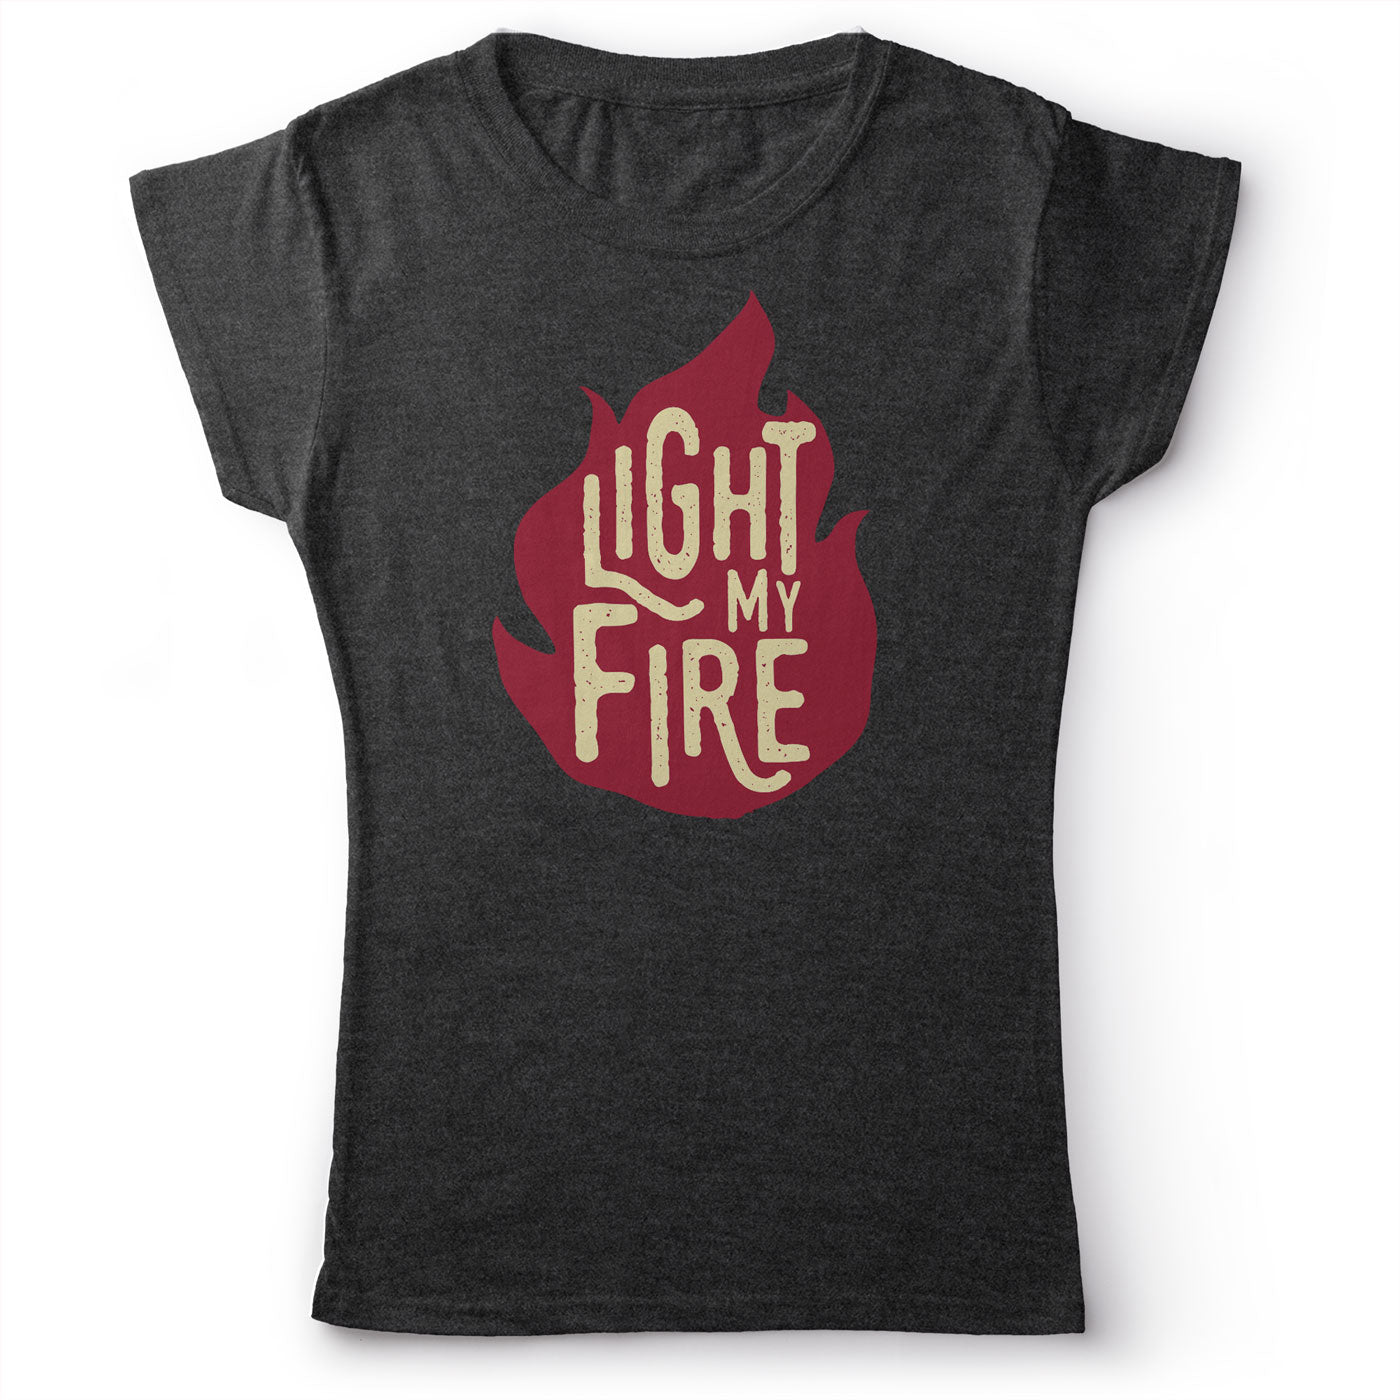 The Doors - Light My Fire - Women's T-Shirt Dark Gray 2